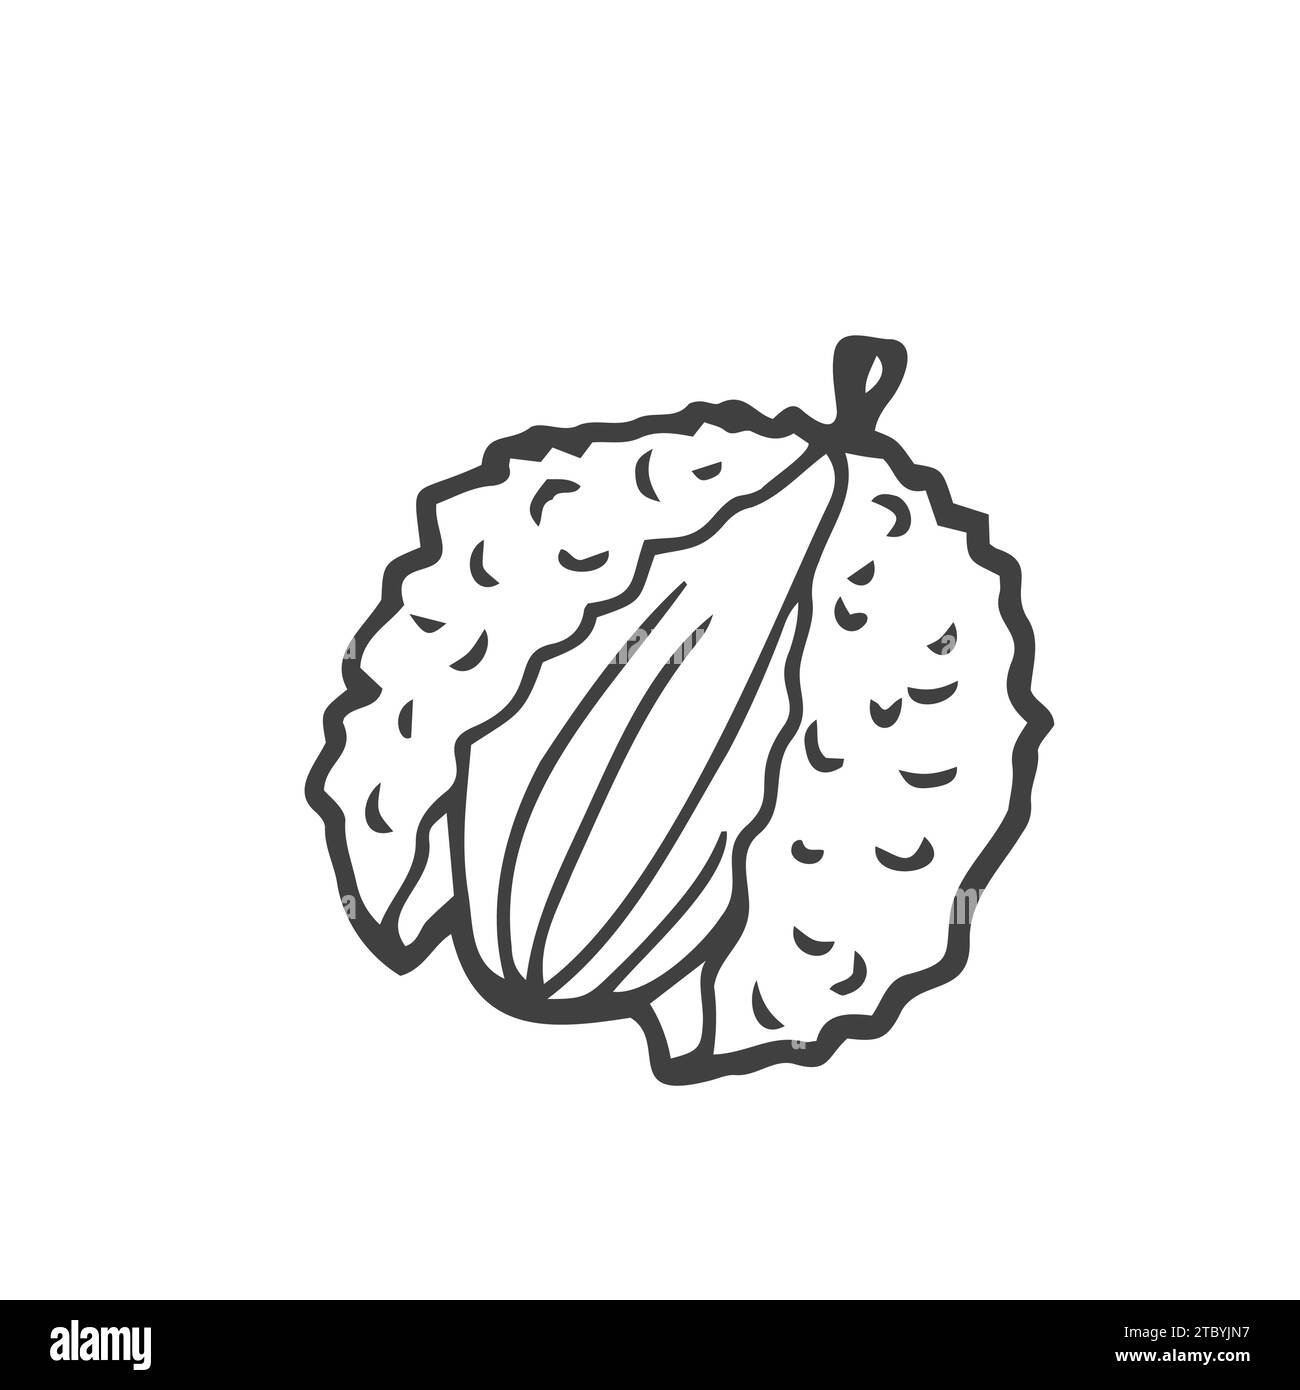 Litschi Frucht Grafik schwarz weiß isolierte Skizze Illustration Stock Vektor